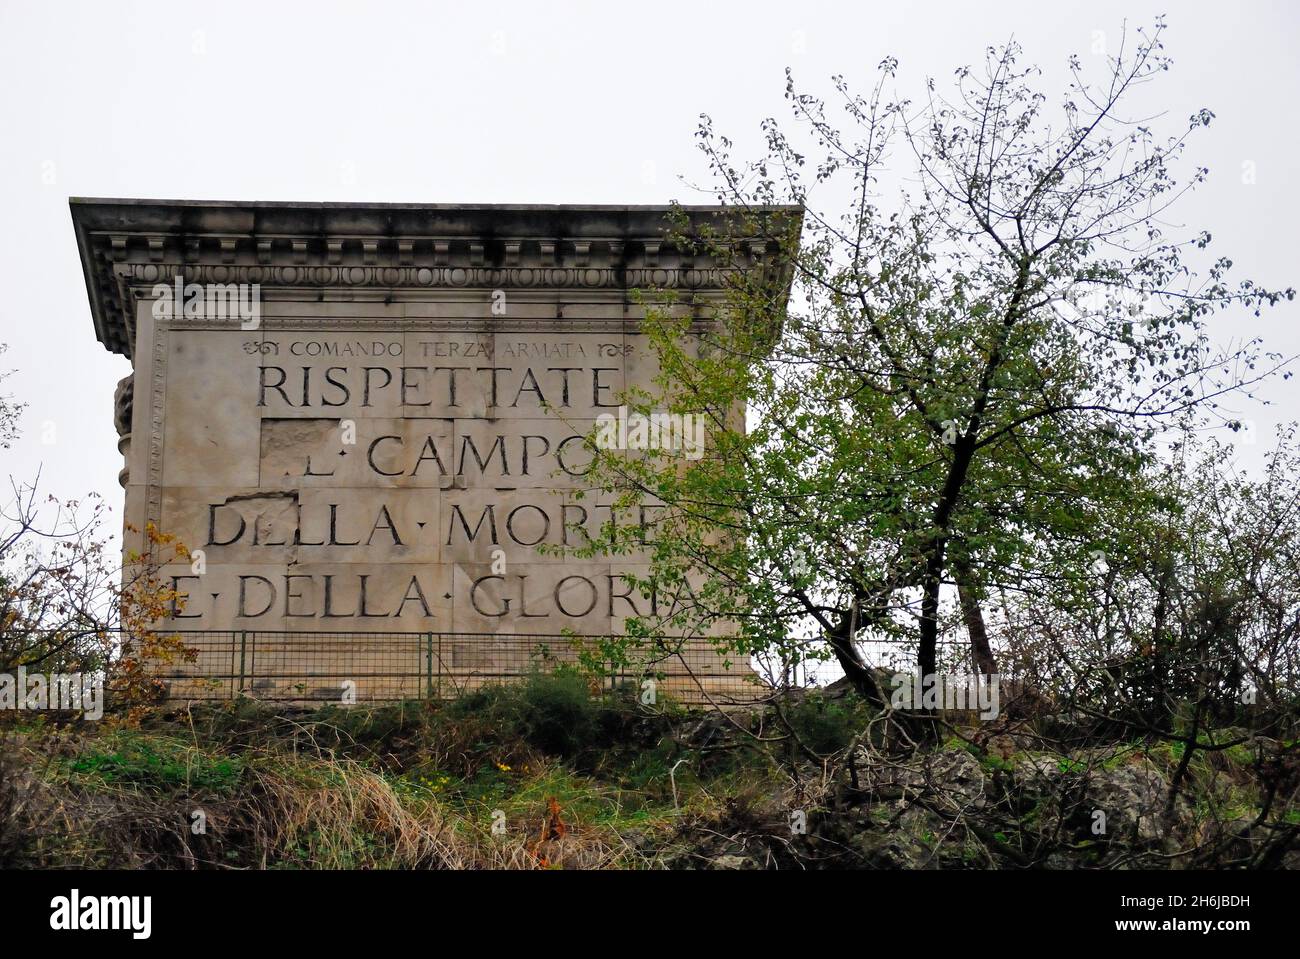 WWI. San Giovanni di Duino, Friuli Venezia Giulia, Italy. WWI : Memorial monument of the Terza Armata (Third Army). The inscription reads: 'Rispettate il campo della morte e della gloria'  (Respect the field of death and glory) Stock Photo